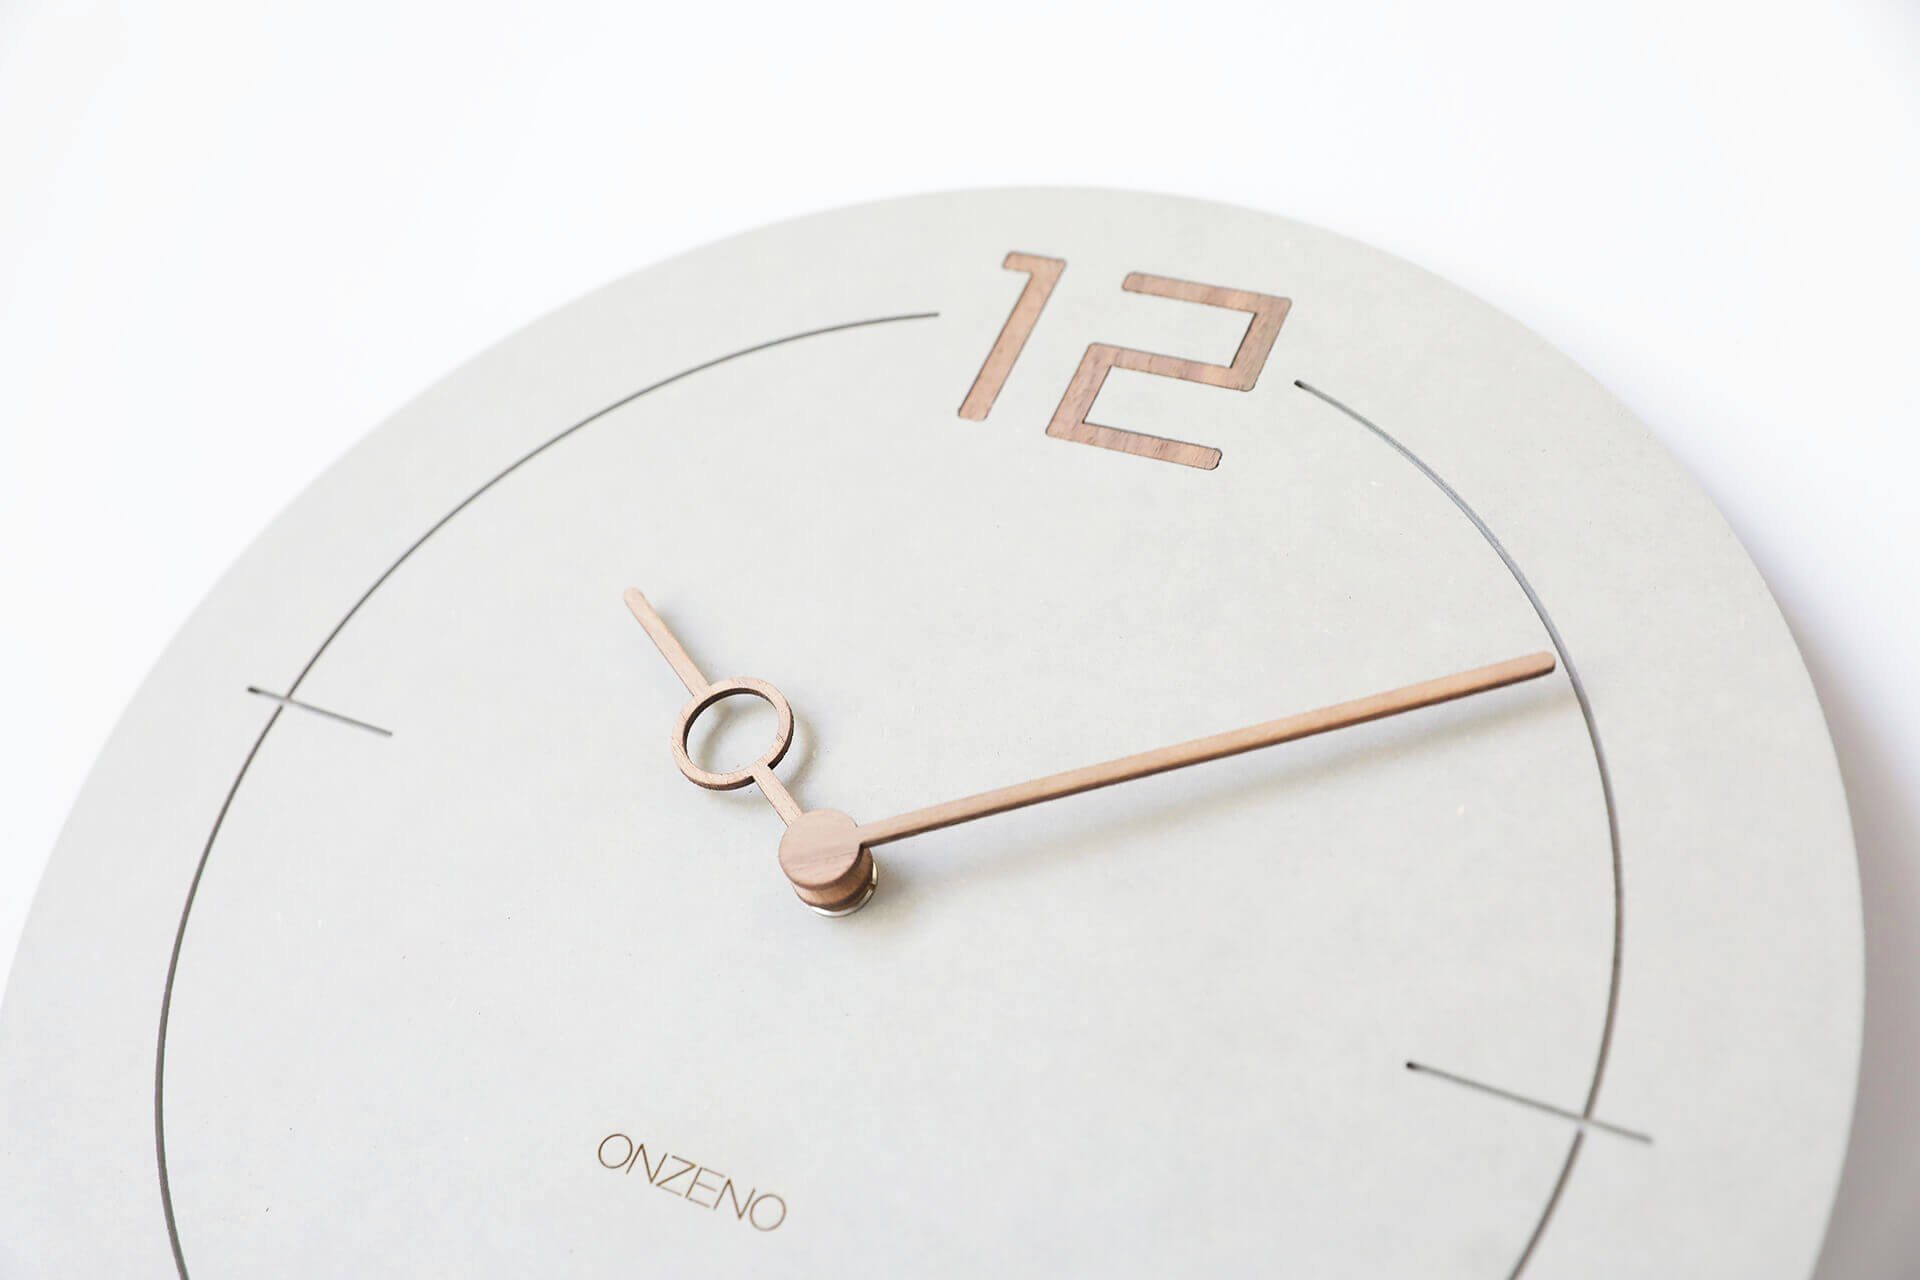 Design-Uhr) (handgefertigte ONZENO Wanduhr GREY. 29x29x0.9 cm THE